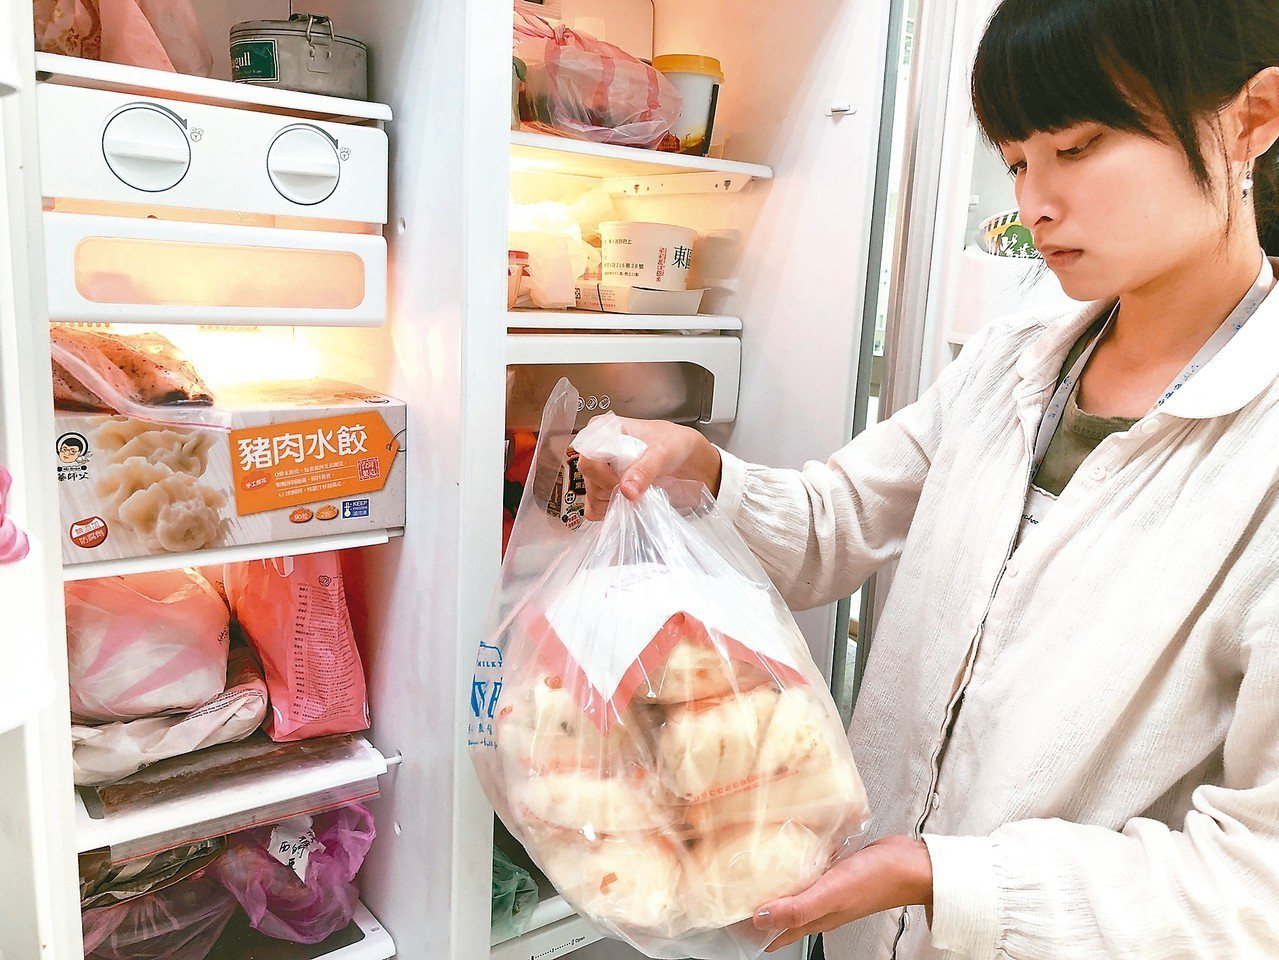 要避免細菌感染導致的食物中毒，食物進冰箱兩天內須儲存在7度以下，若要冰超過兩天，則要冷凍保存。